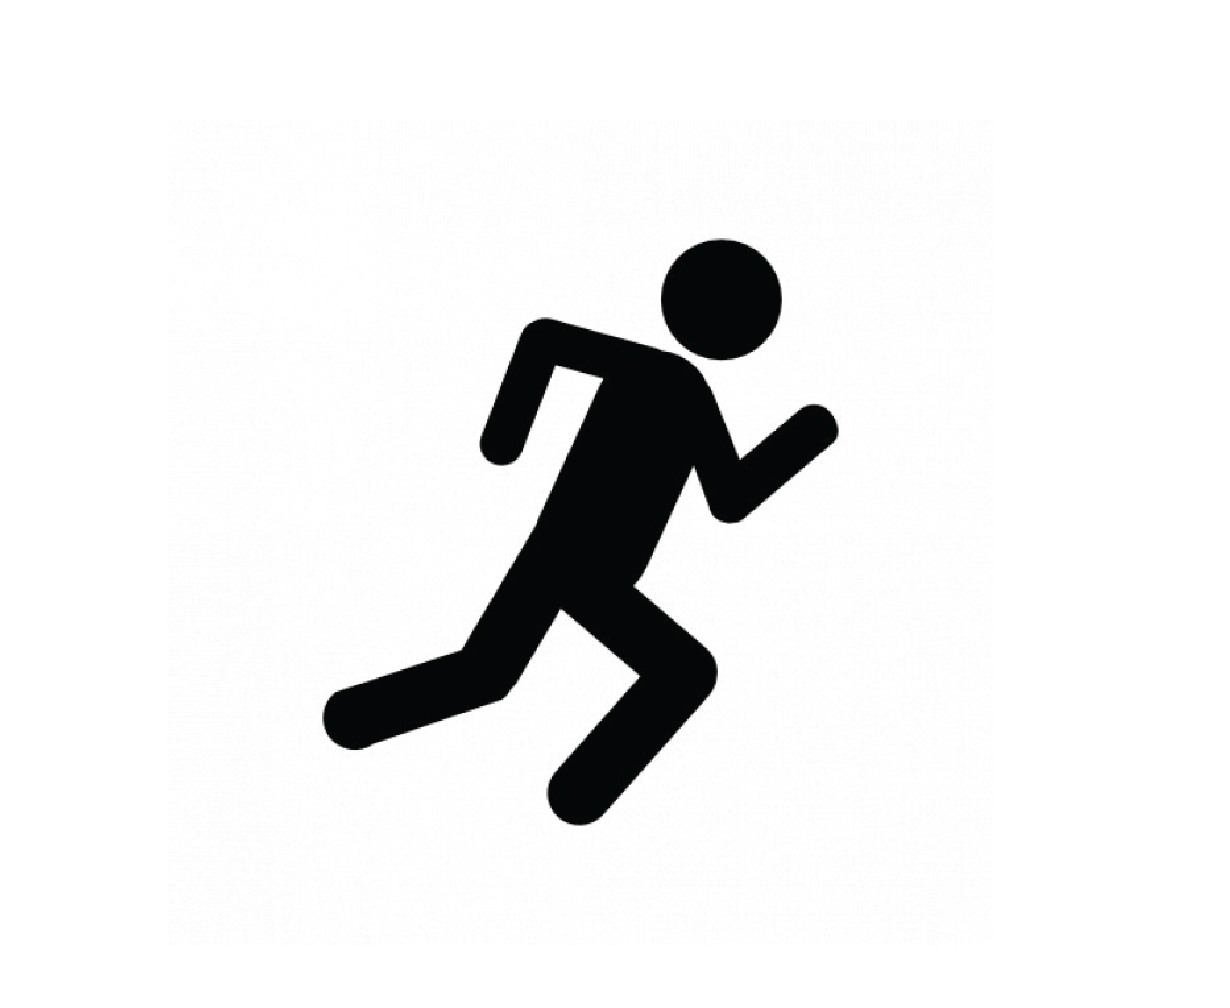 Running icon. Бегущий человечек. Значок бегущего человека. Человек убегает. Пиктограмма бежит.